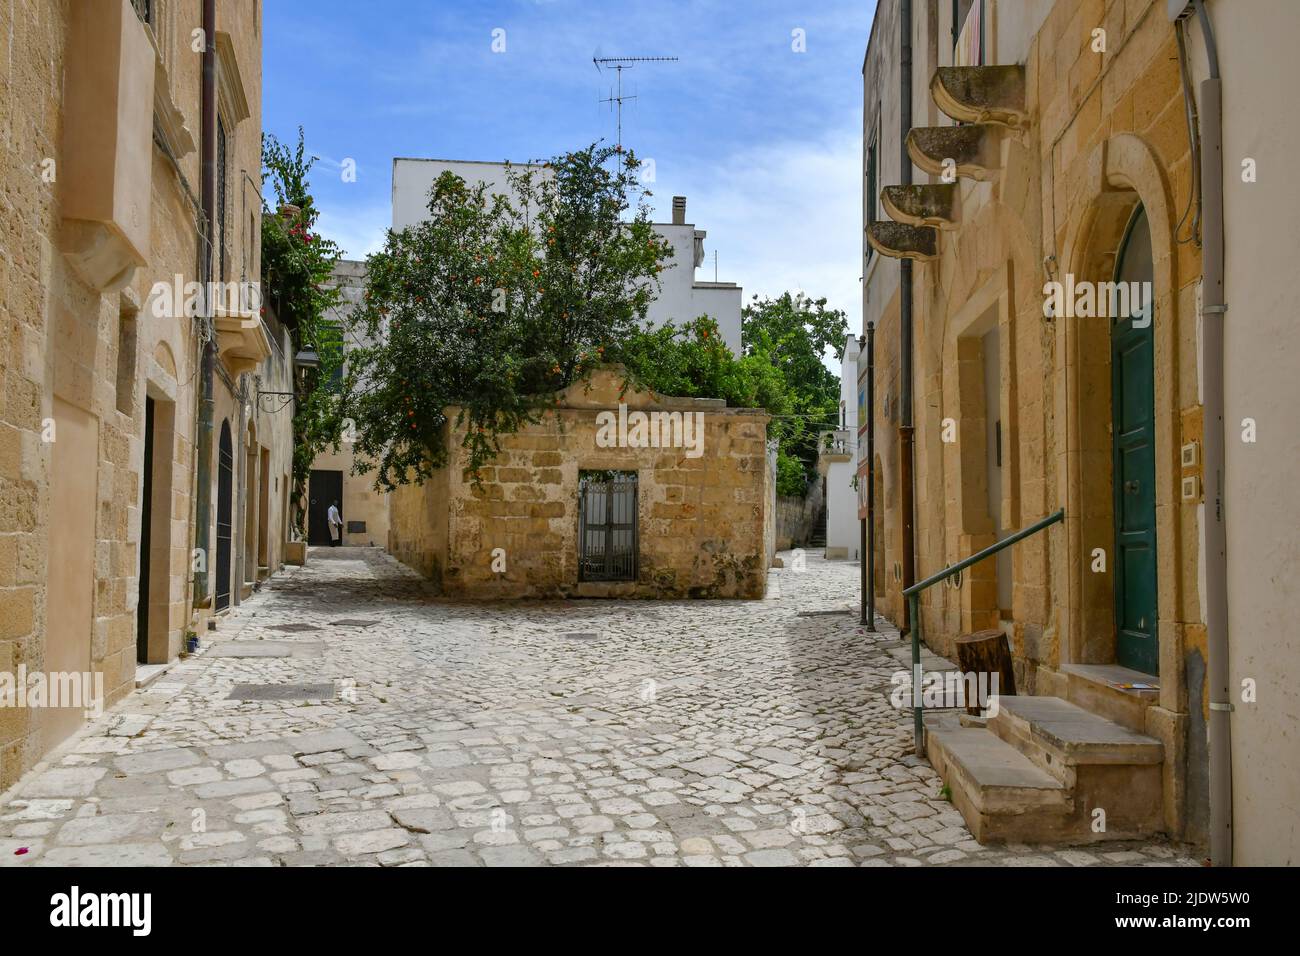 Une rue étroite parmi les maisons anciennes dans le centre historique d'Otranto, une ville de Puglia en Italie. Banque D'Images